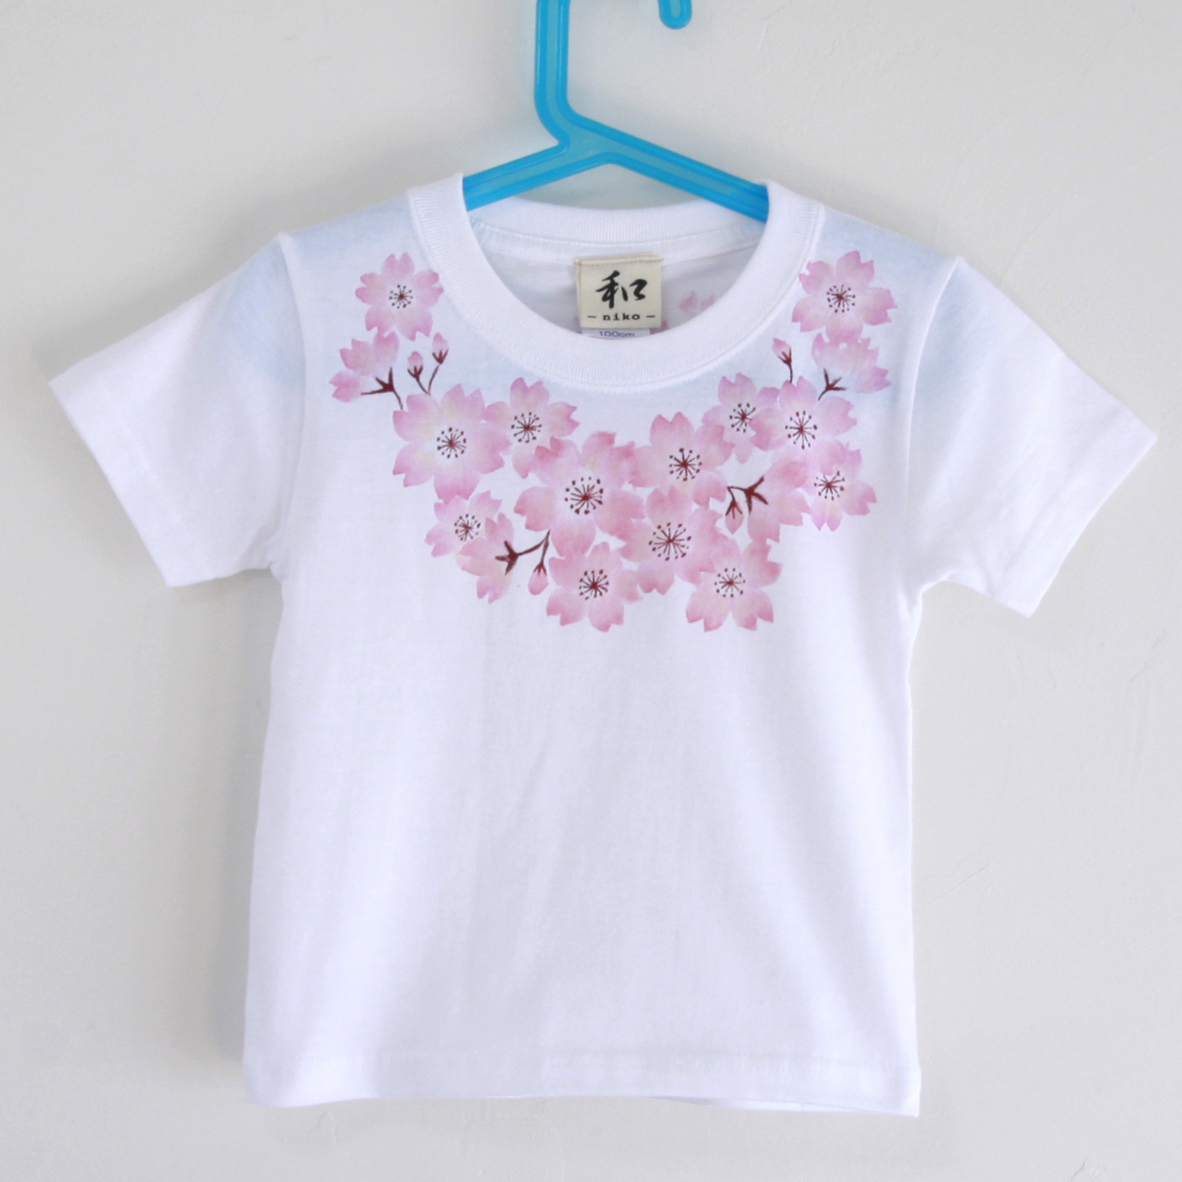 Vêtements pour enfants T-shirt pour enfants Taille 120 Corsage blanc Motif de fleurs de cerisier T-shirt fait à la main T-shirt peint à la main Motif japonais Cadeau de printemps, hauts, t-shirt à manches courtes, 120(115~124cm)